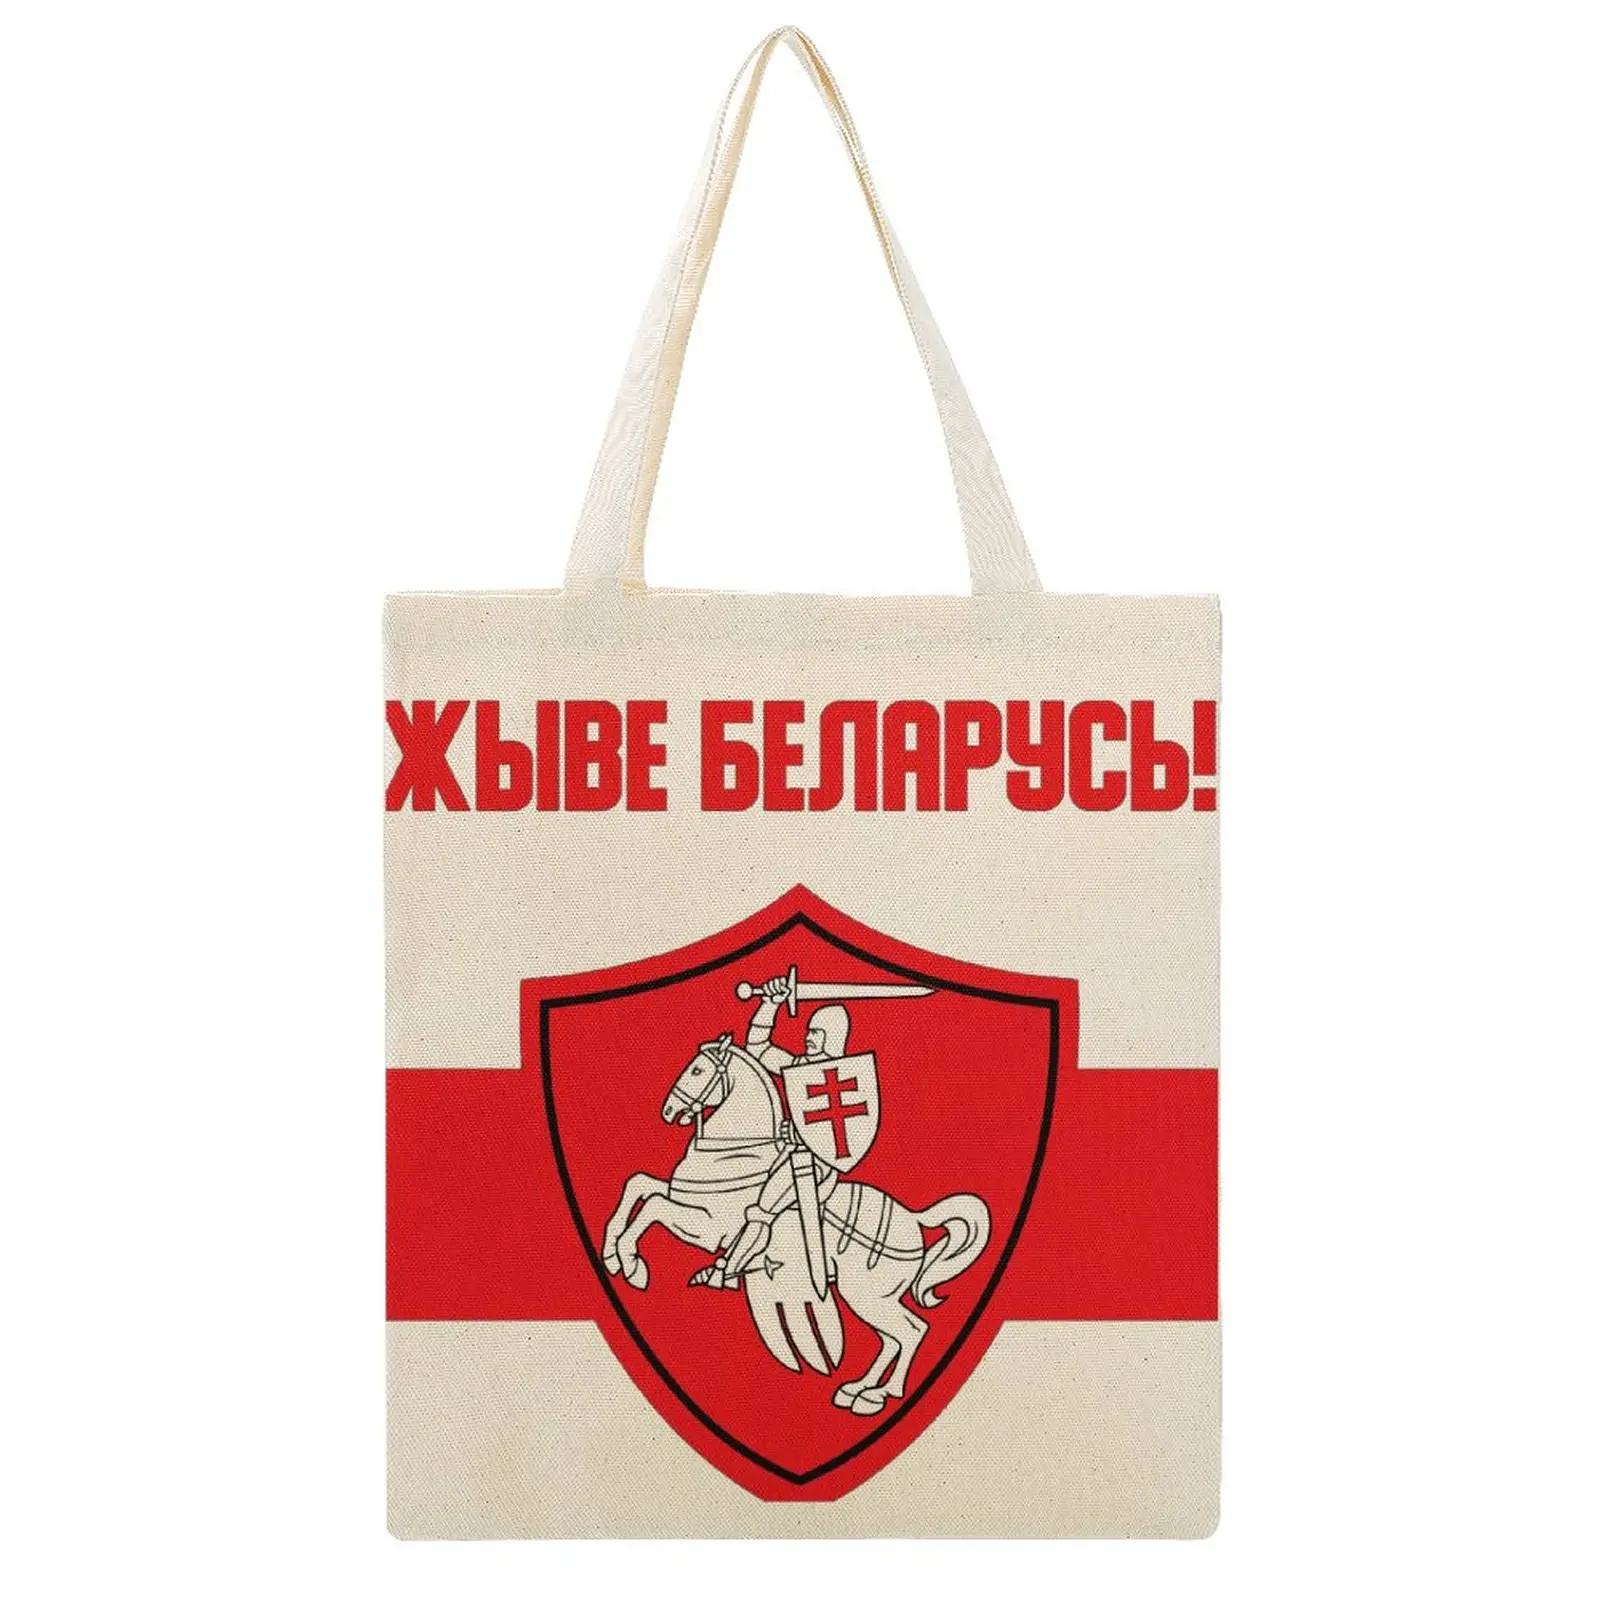 

Canvas Tote Bag Double Belarus Protest Anti Lukashenko Pogonya Flag Essential Hot Sale Vintage Handbag Canvas Bag Funny Novelty